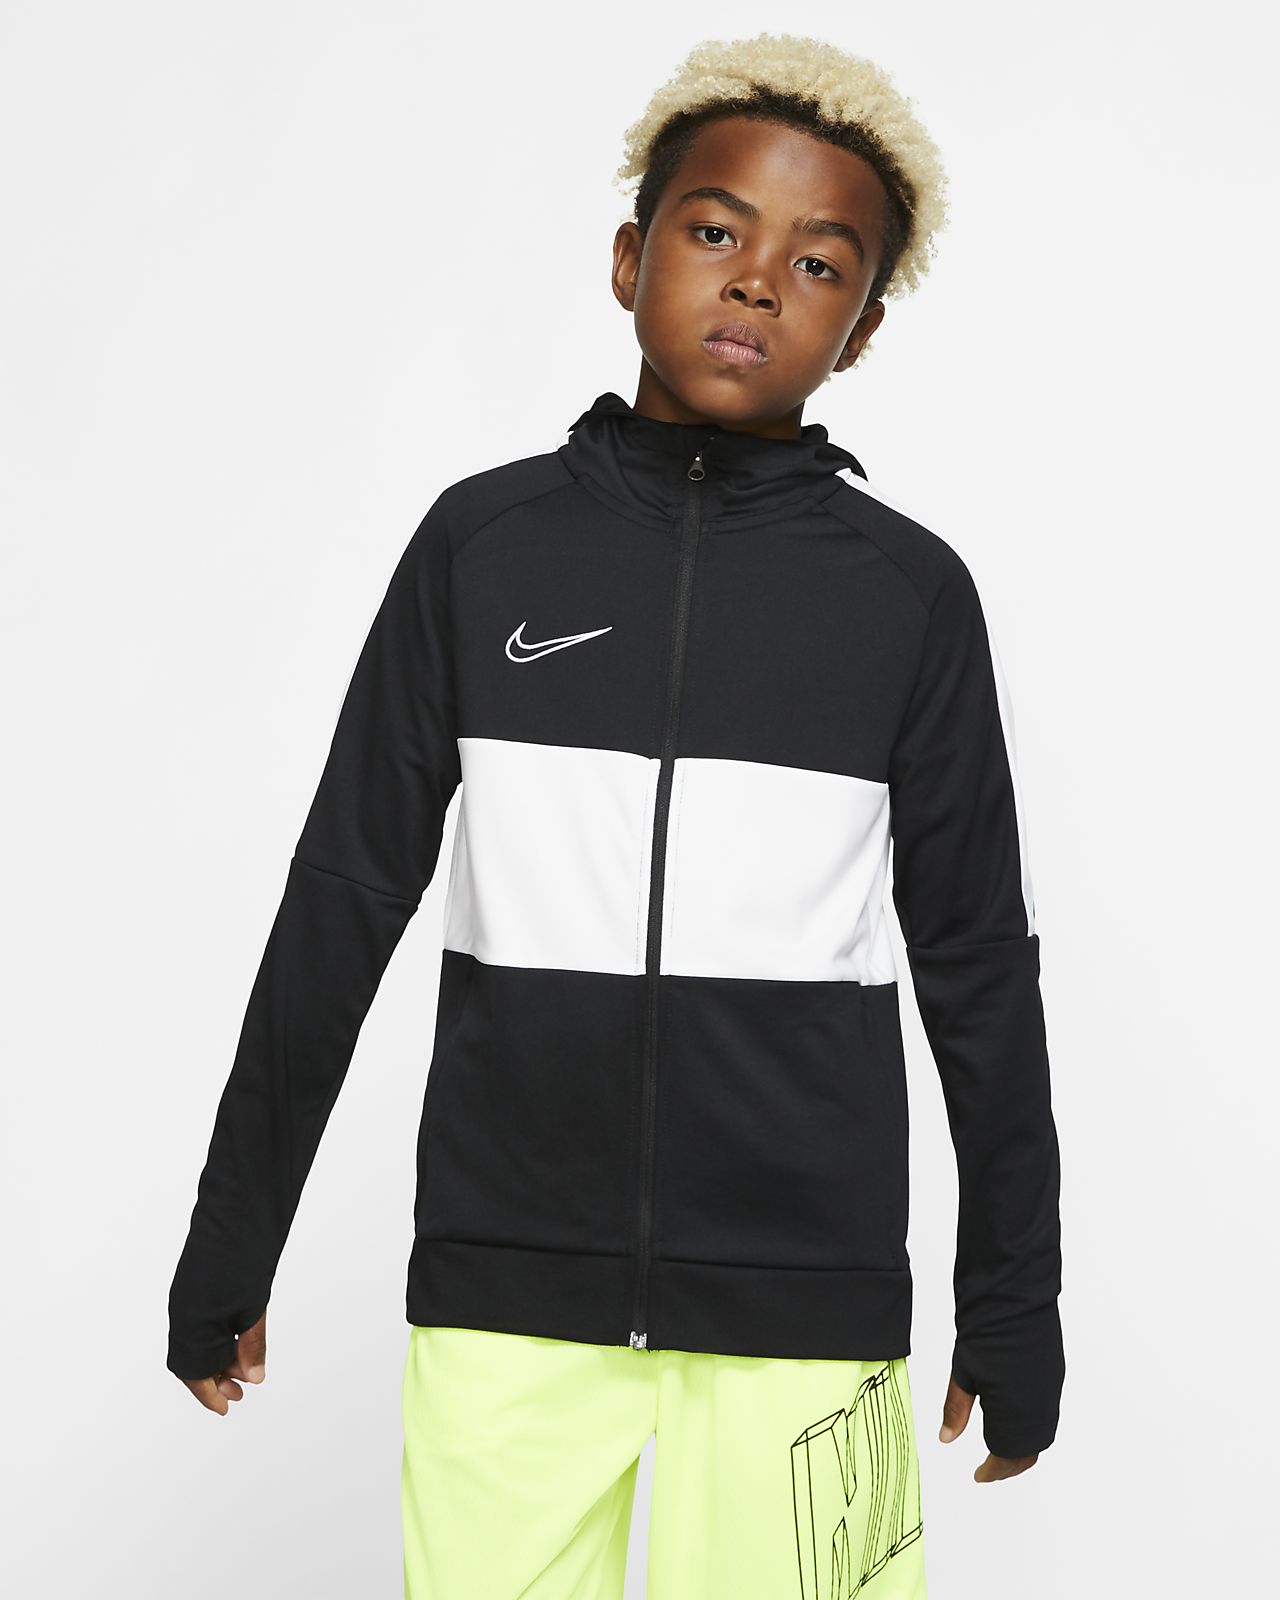 Kids Nike Football Jacket